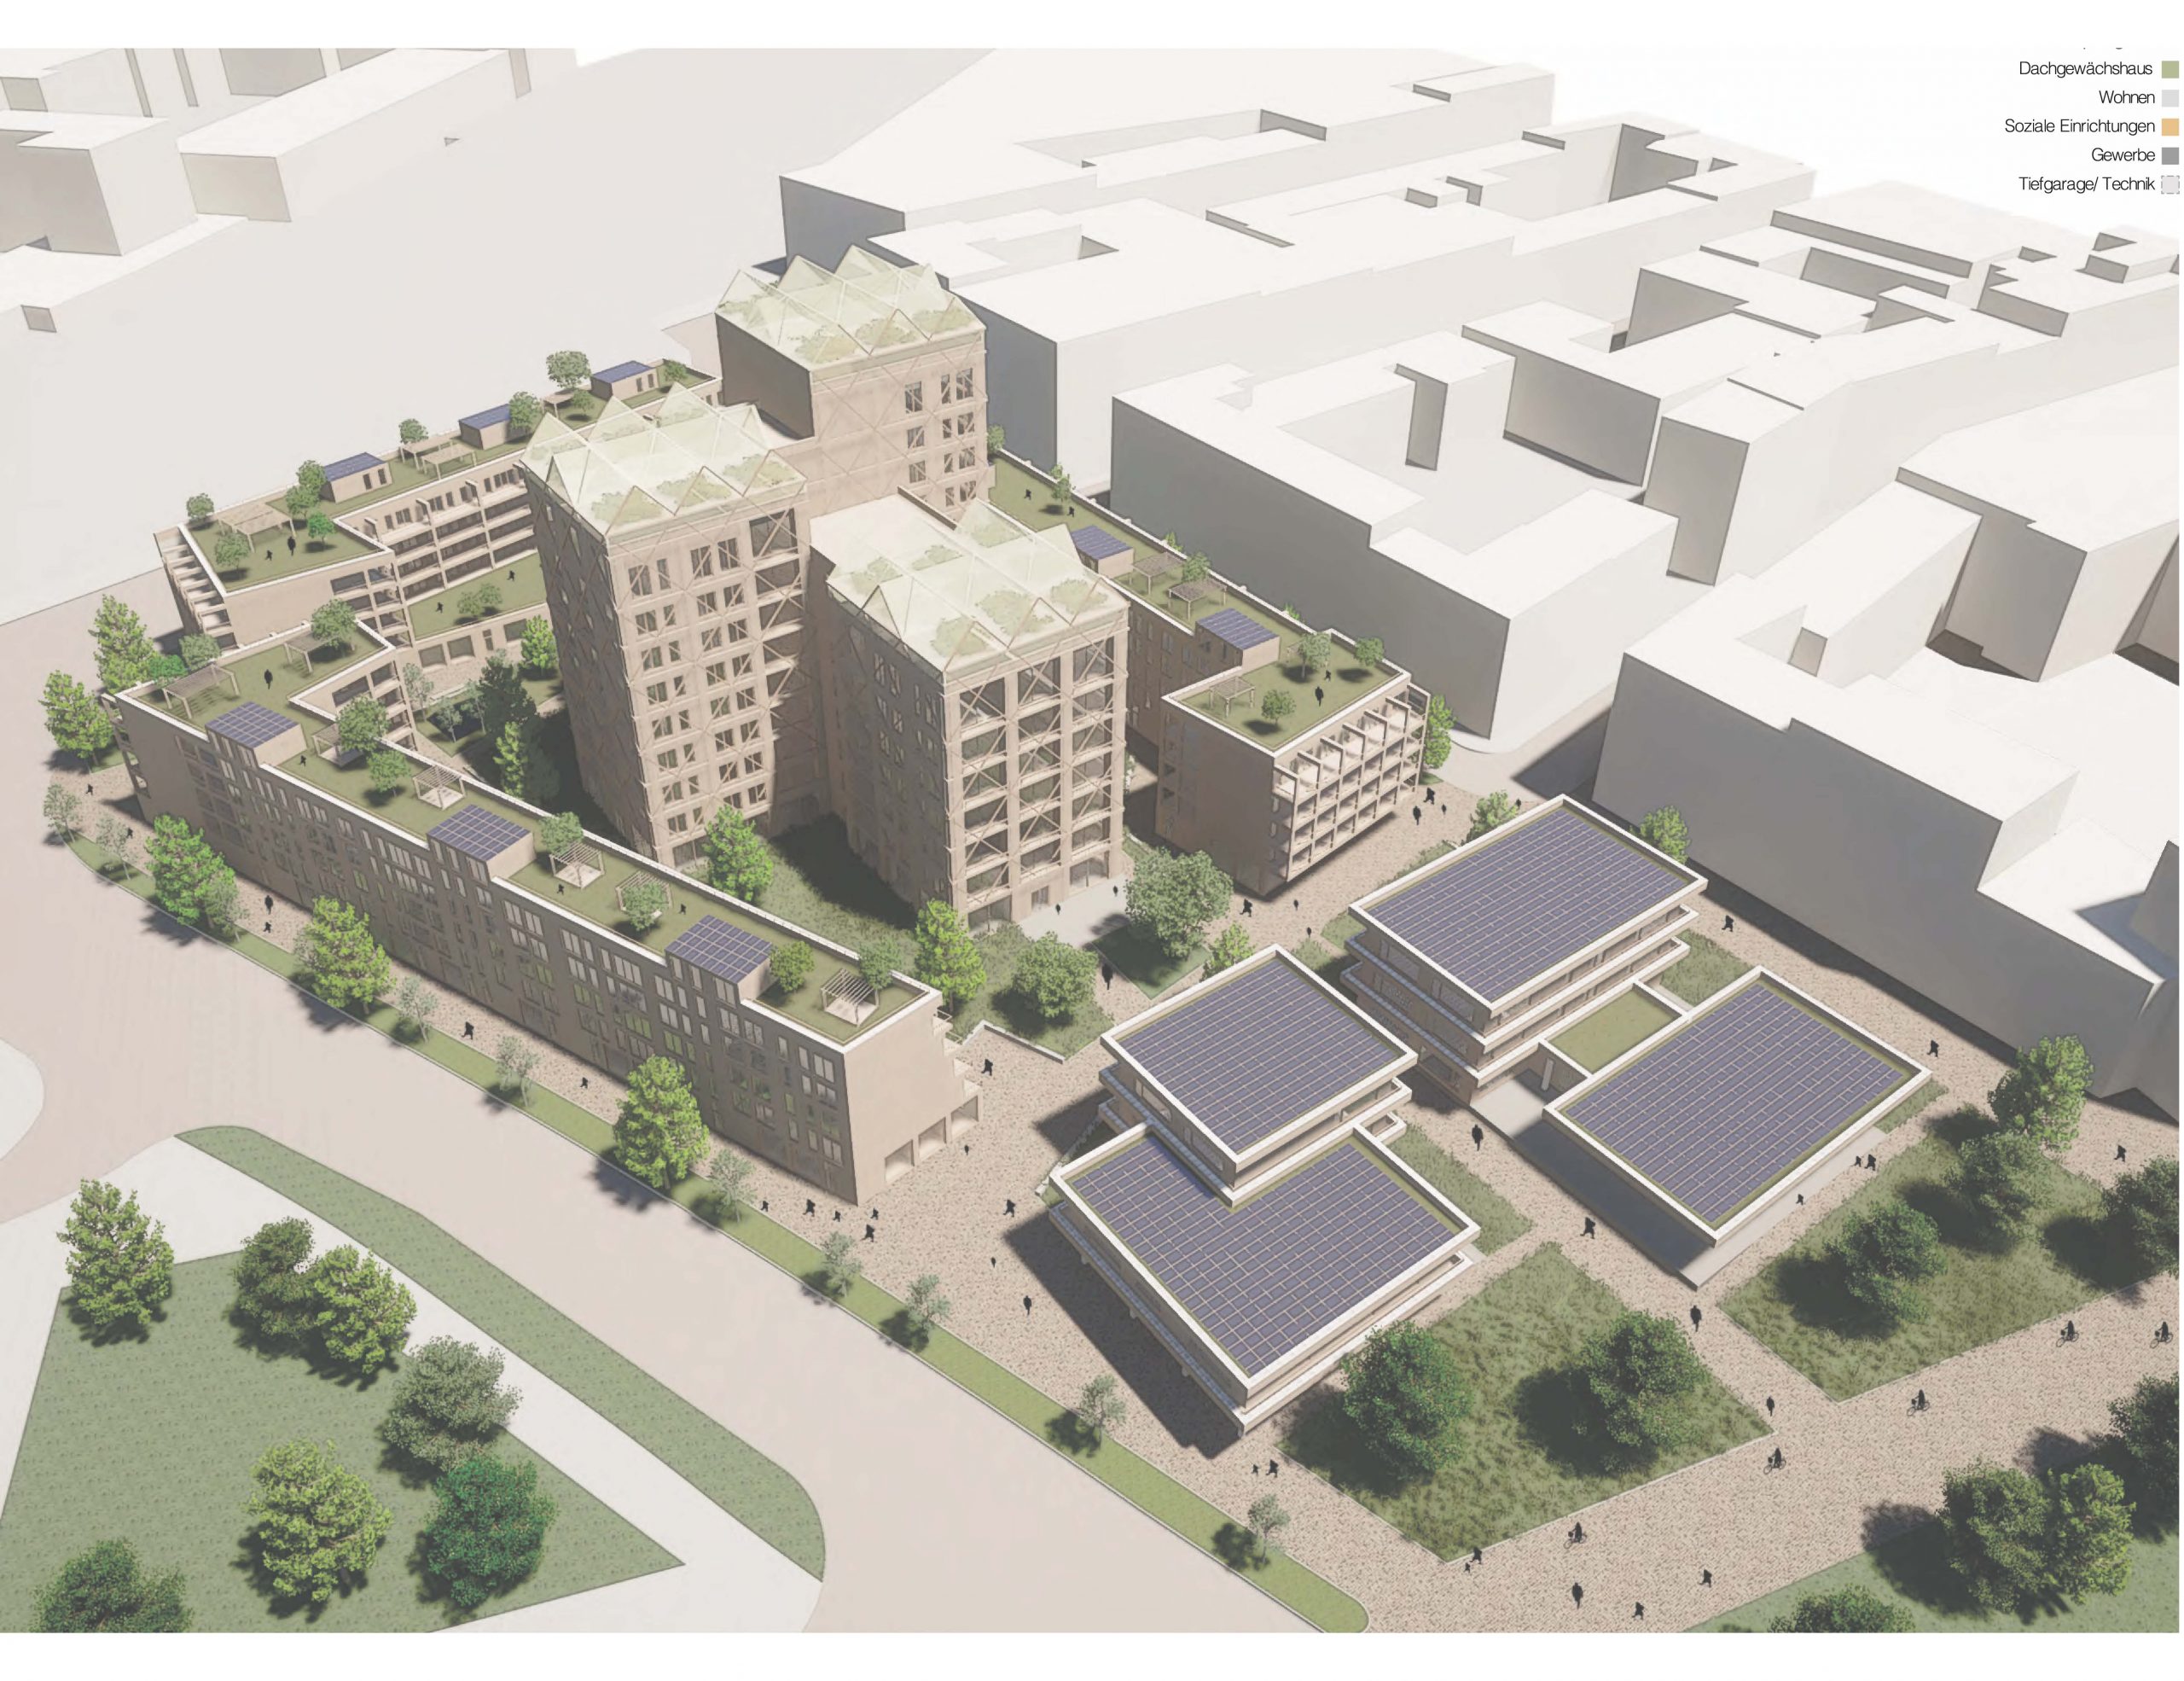 Goseriede Quartier – Entwicklung eines neuen Stadtquartiers